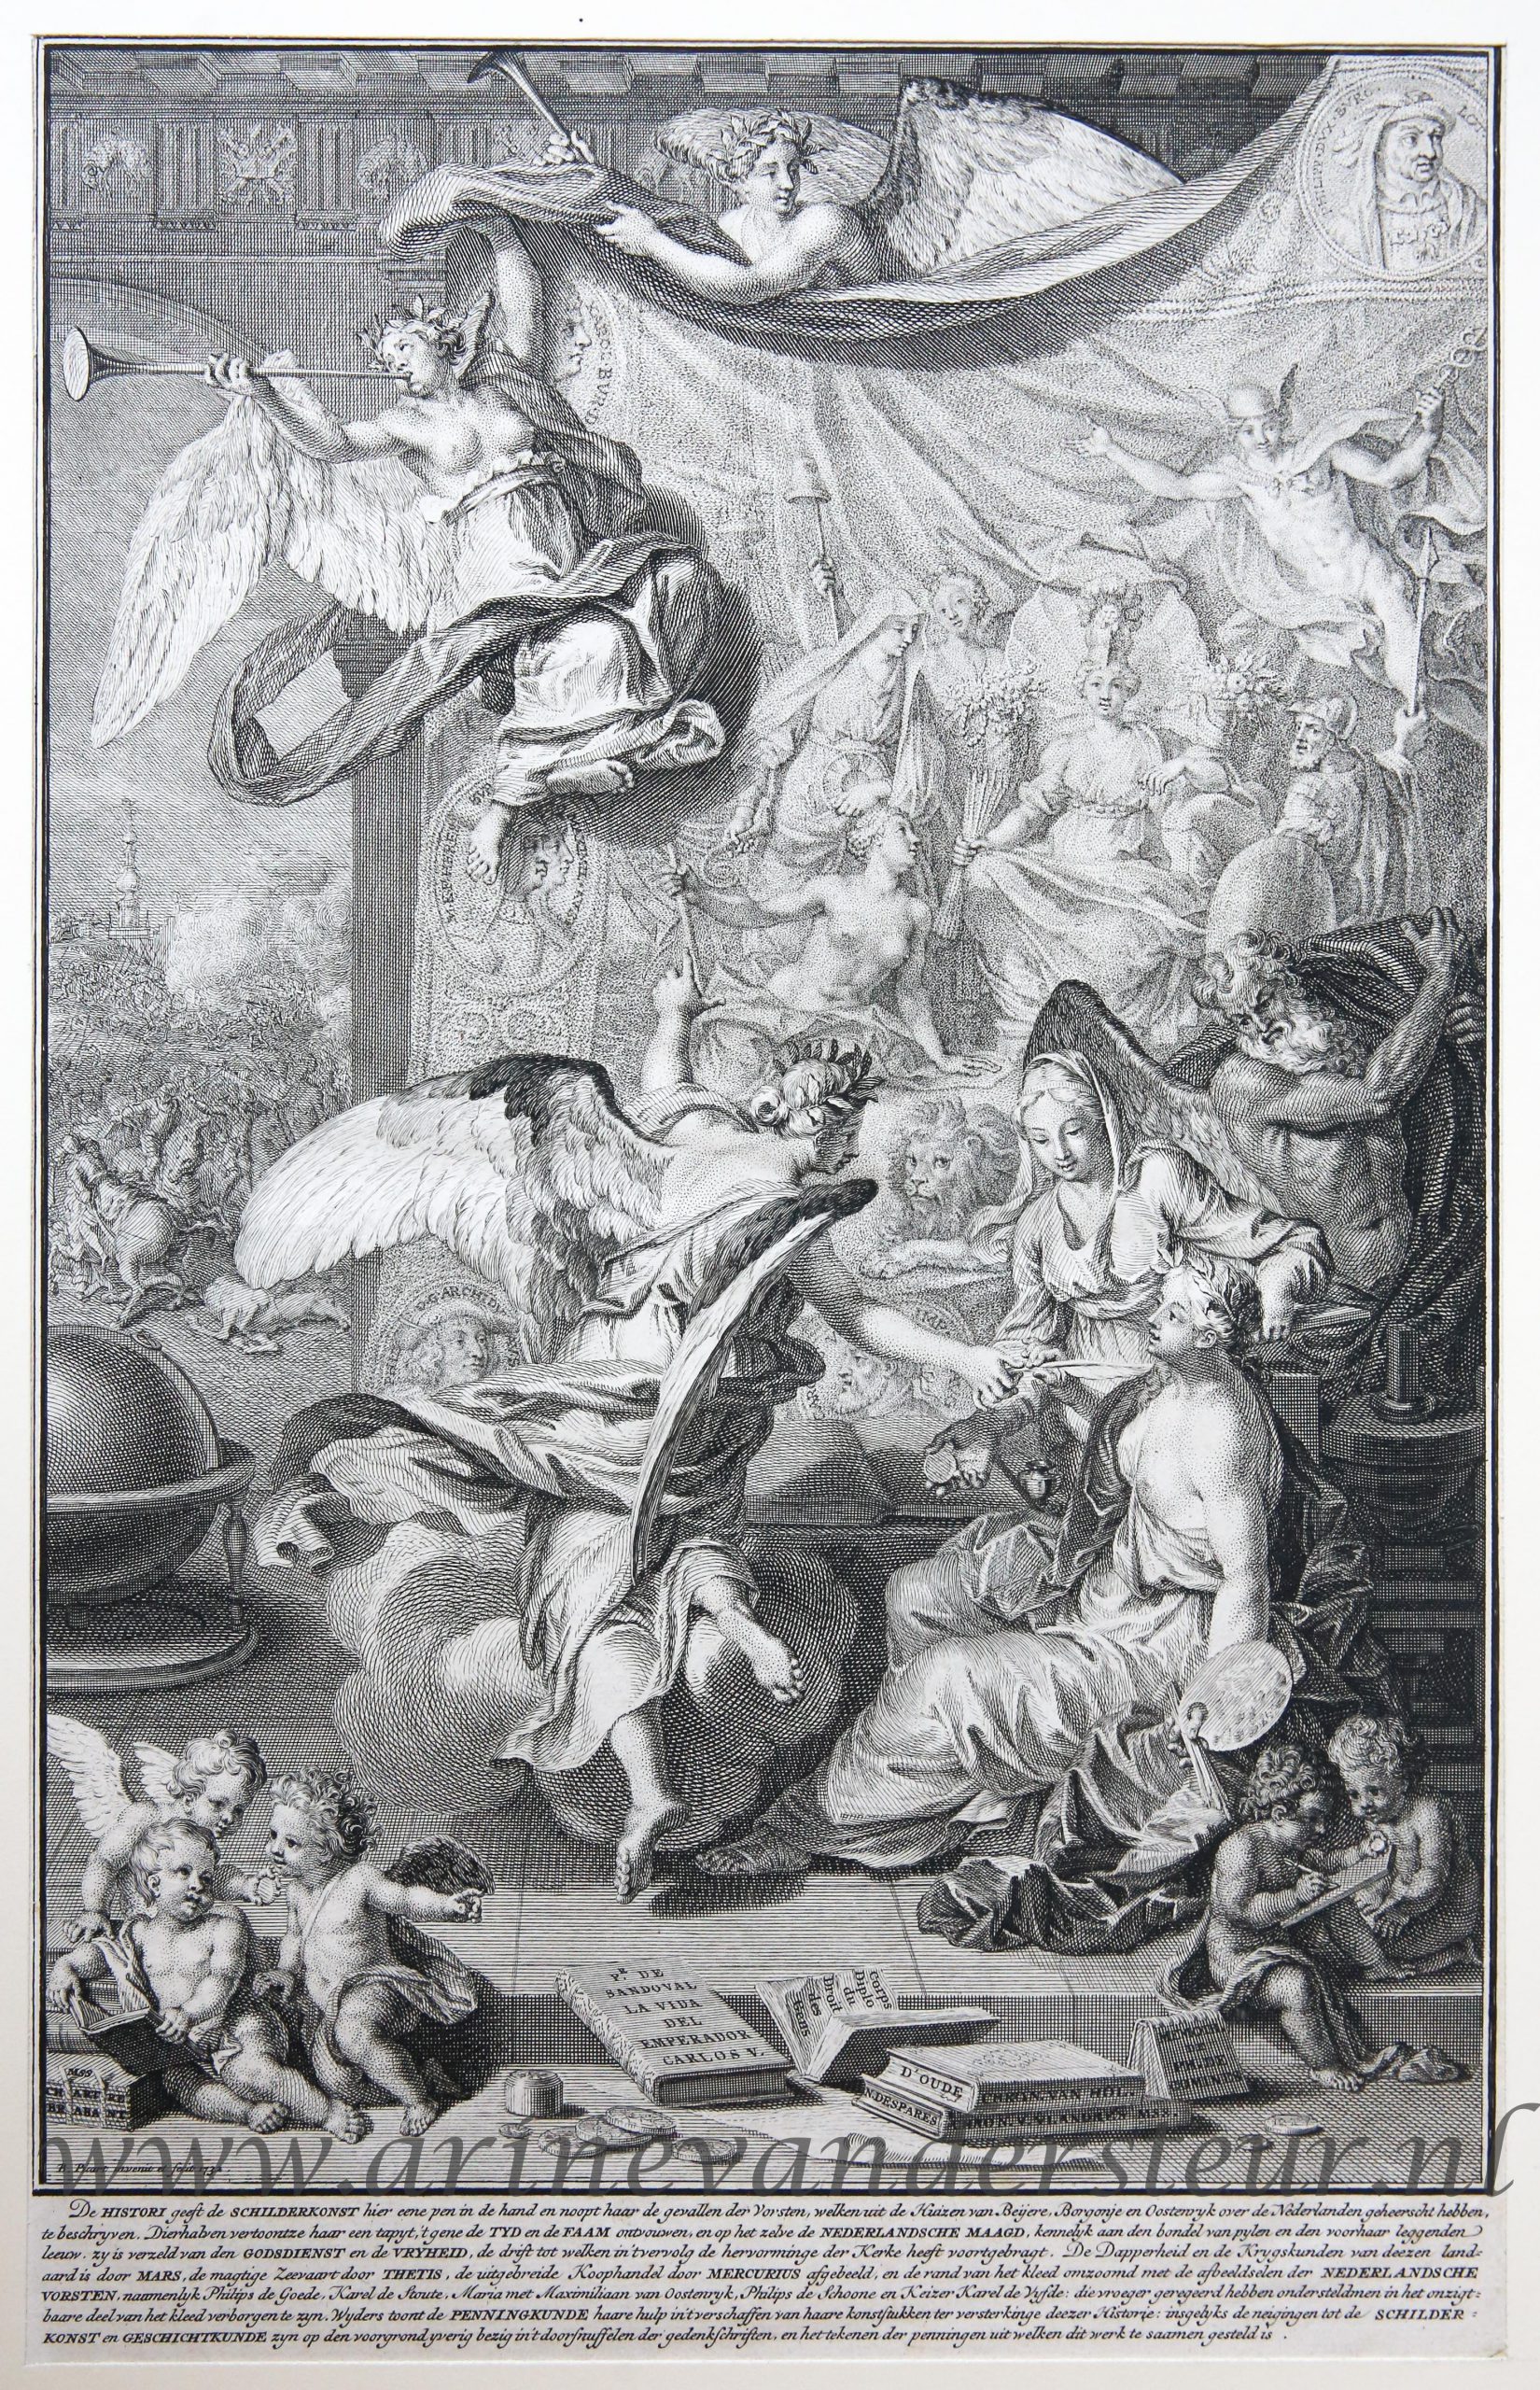 [Antique title page, 1732] Geschiedenis geeft de Schilderkunst een schrijfveer om de geschiedenissen van de Nederlandse vorsten op te tekenen [Histori der Nederlandsche vorsten], published 1732, 1 p.